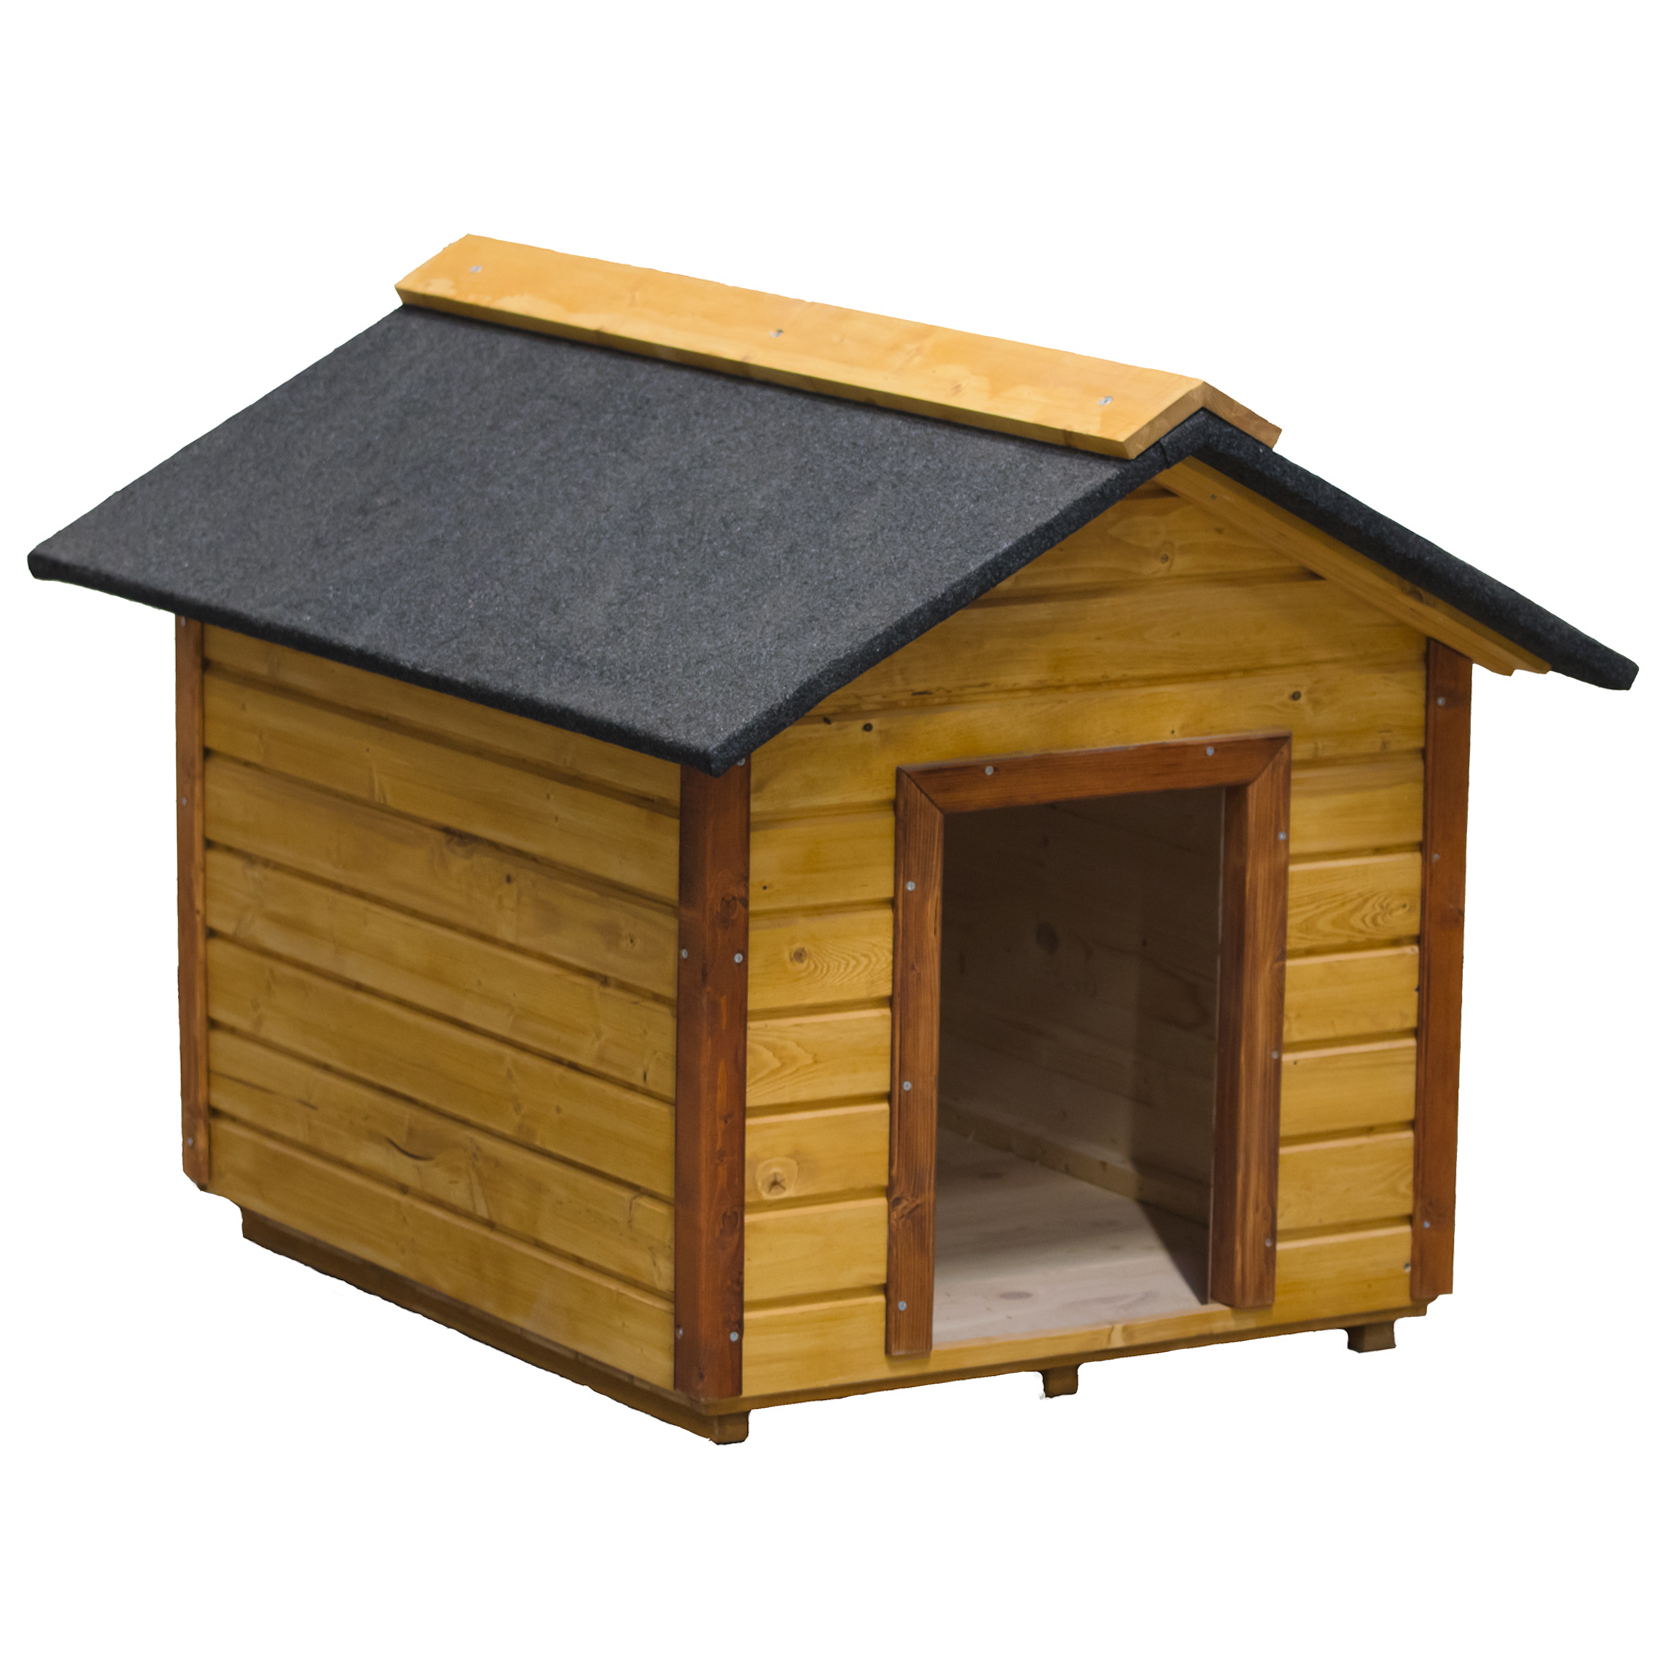 Будка купить теплая. Будка для собаки. Собака с конурой. Крыша для будки. Теплая будка для собаки.